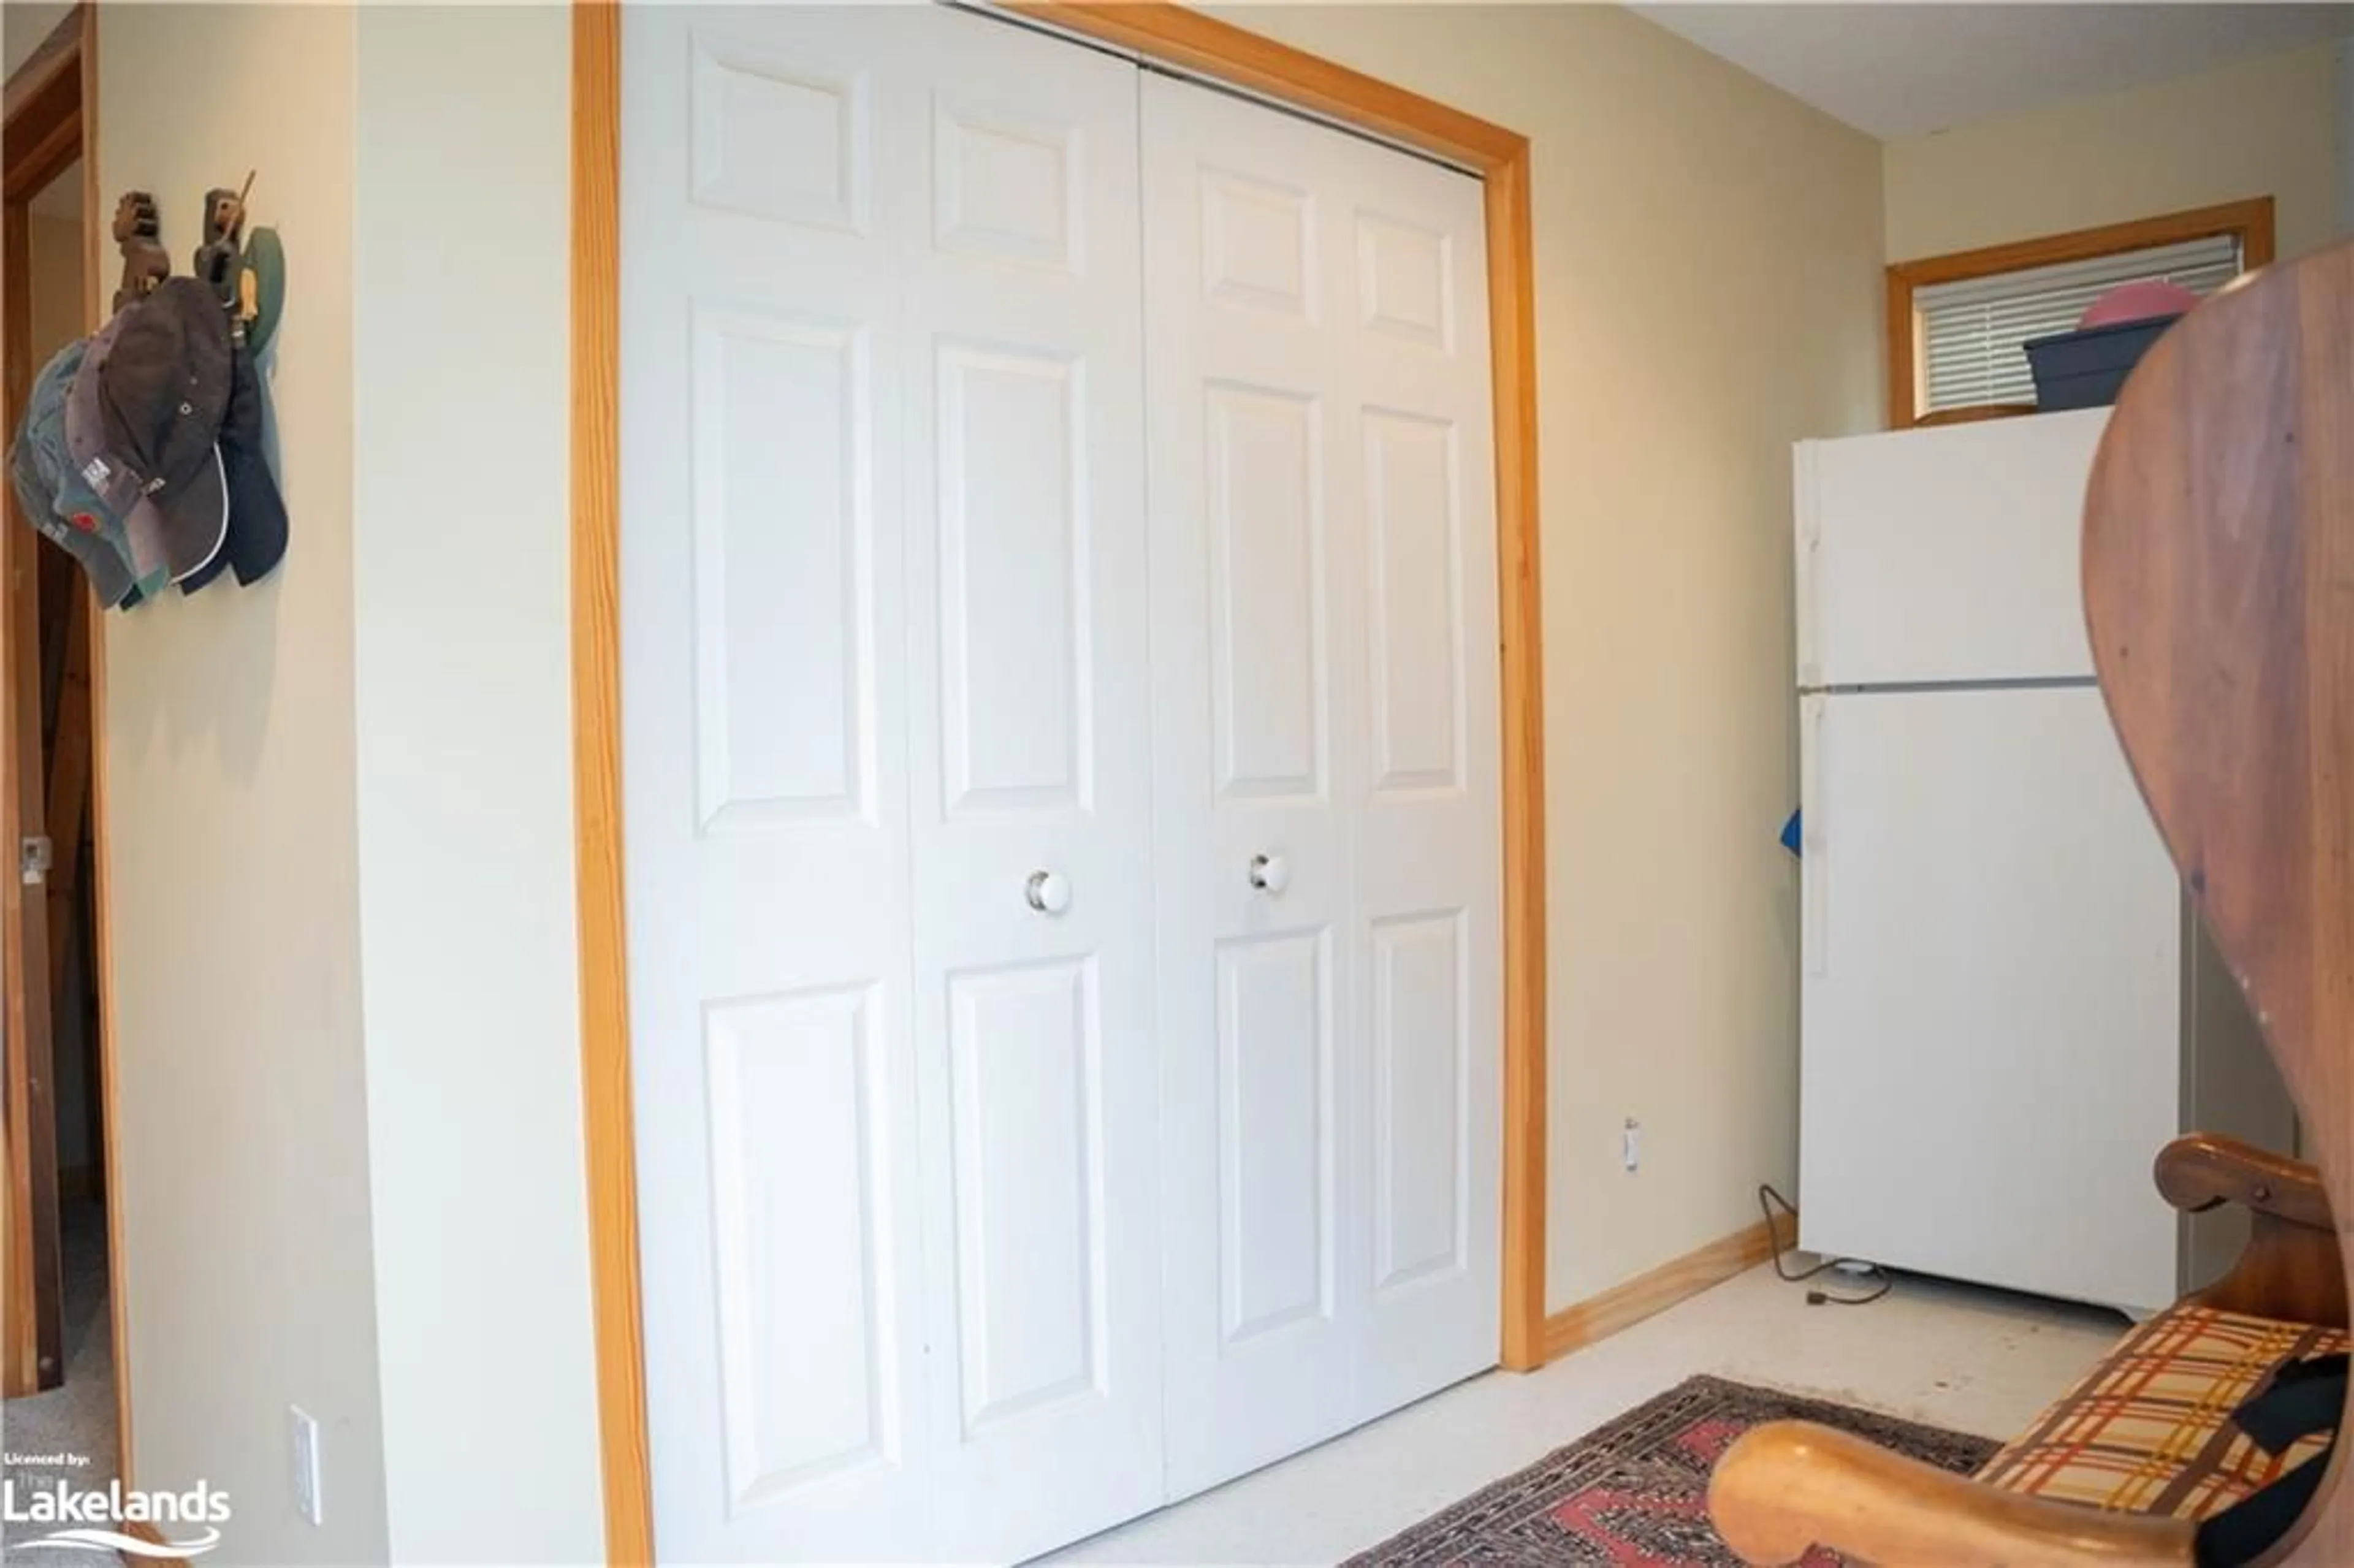 Storage room or clothes room or walk-in closet for 2246 Wilkinson Rd, Haliburton Ontario K0M 1S0